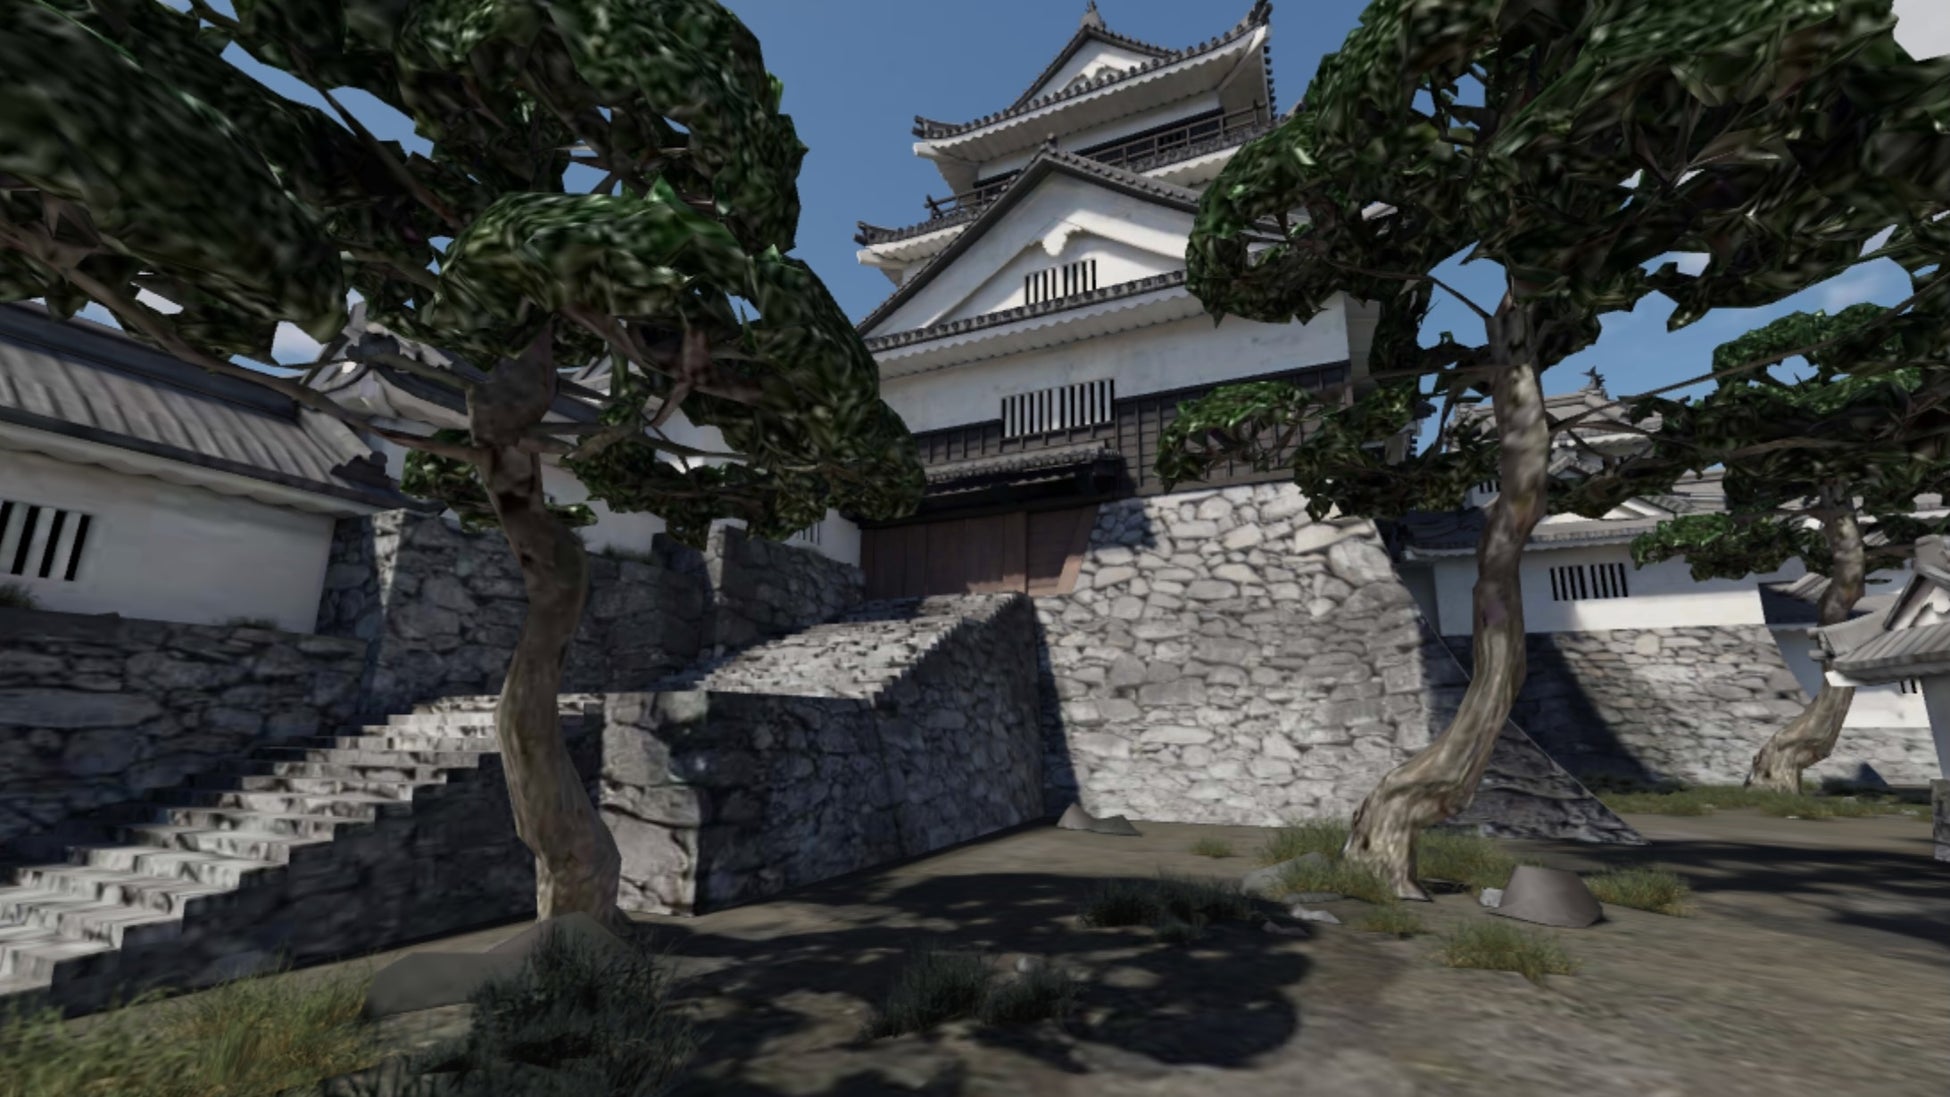 一旗プロデュース「岡崎城1645 EVOLUTION」VR・メタバースを公開。徳川家康生誕の地で日本100名城・岡崎城の1645年頃の城郭が3DCGでよみがえる。